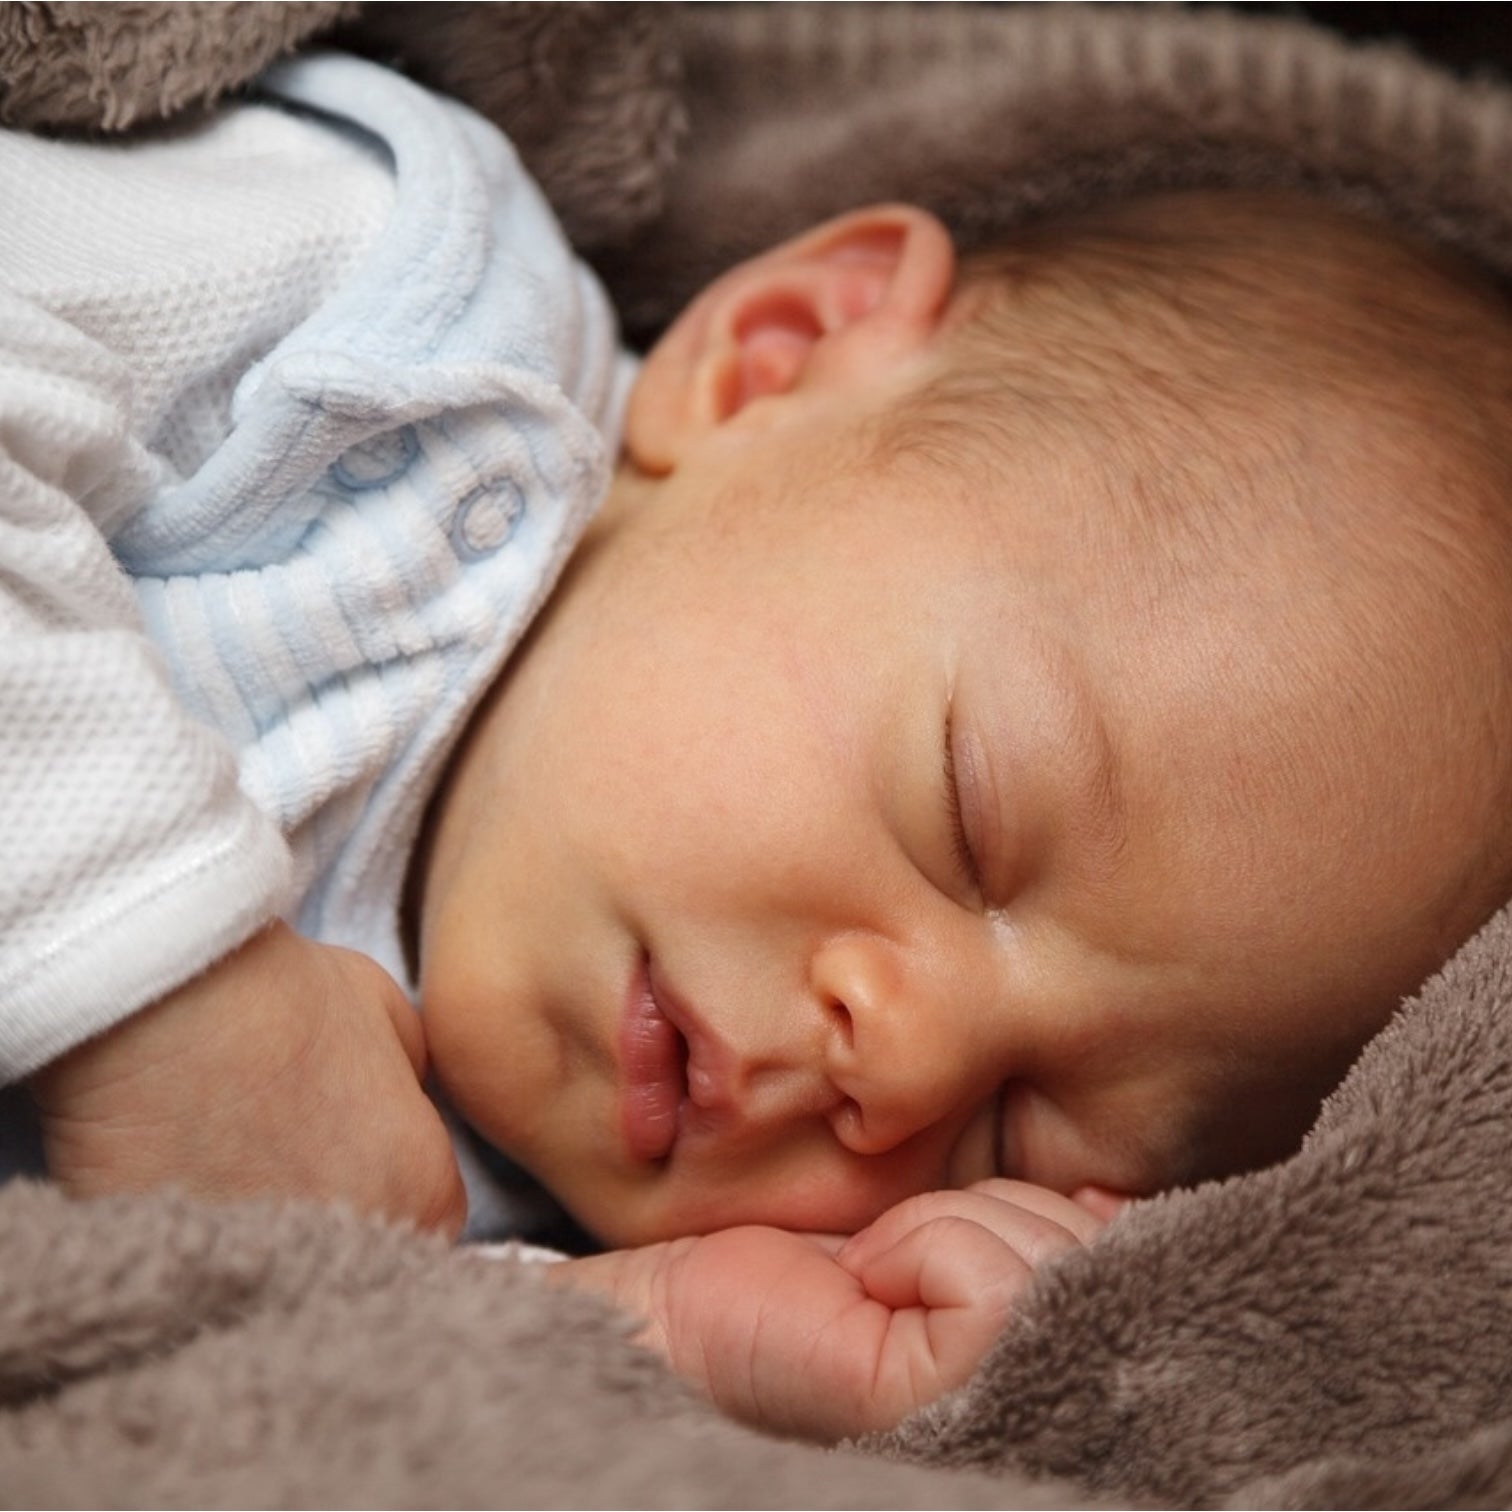 pour aider bebe a s endormir grace a la chaleur et la lavande contenue dans le coussin